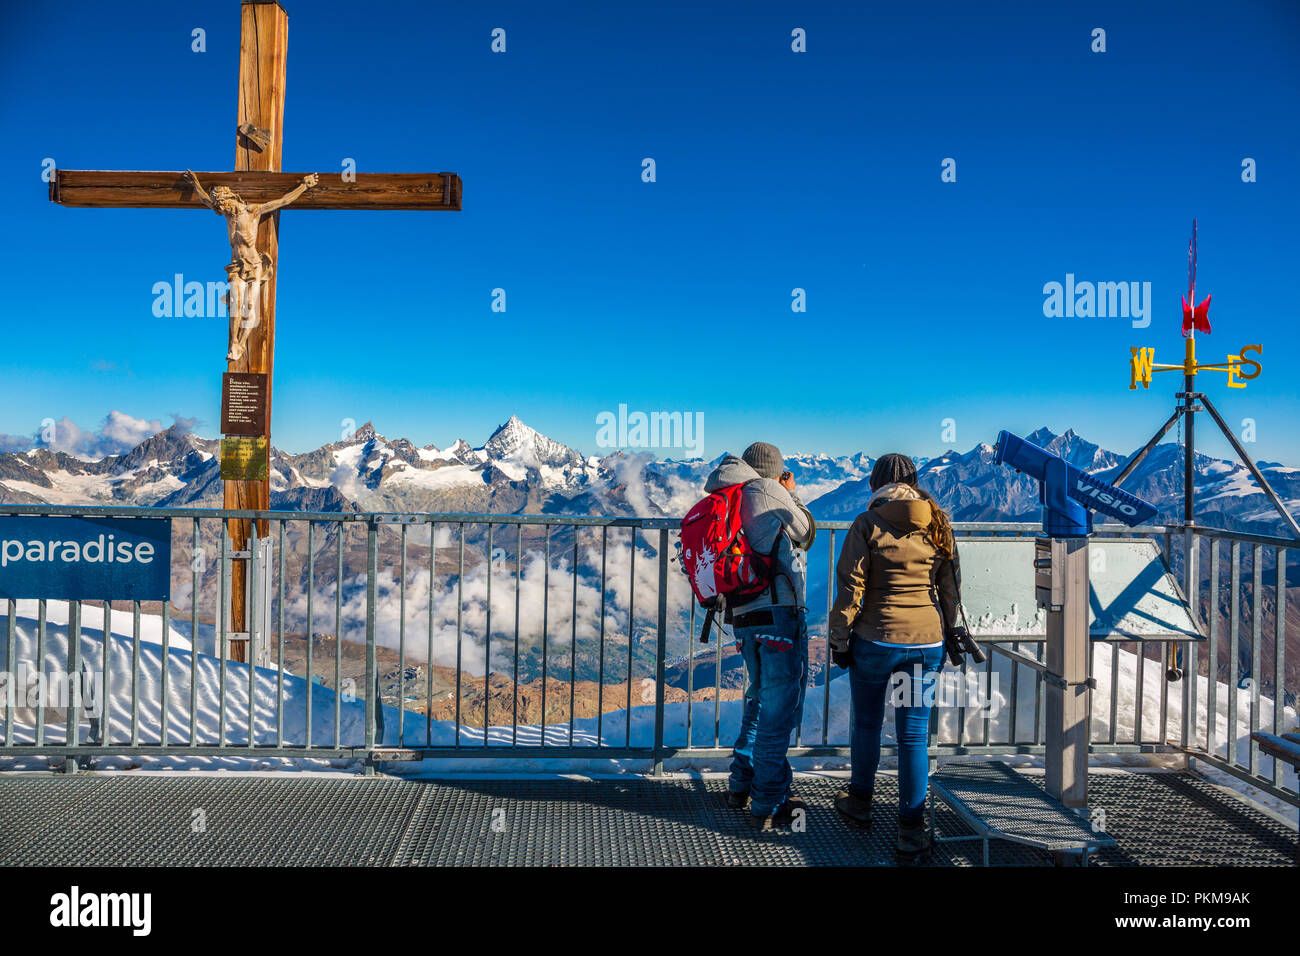 Terrasse auf dem Gipfel. Klein Matterhorn (Matterhorn Glacier Paradise).  (3883 Meter). Zermatt. Schweizer Alpen. Wallis. Die Schweiz. Europa  Stockfotografie - Alamy